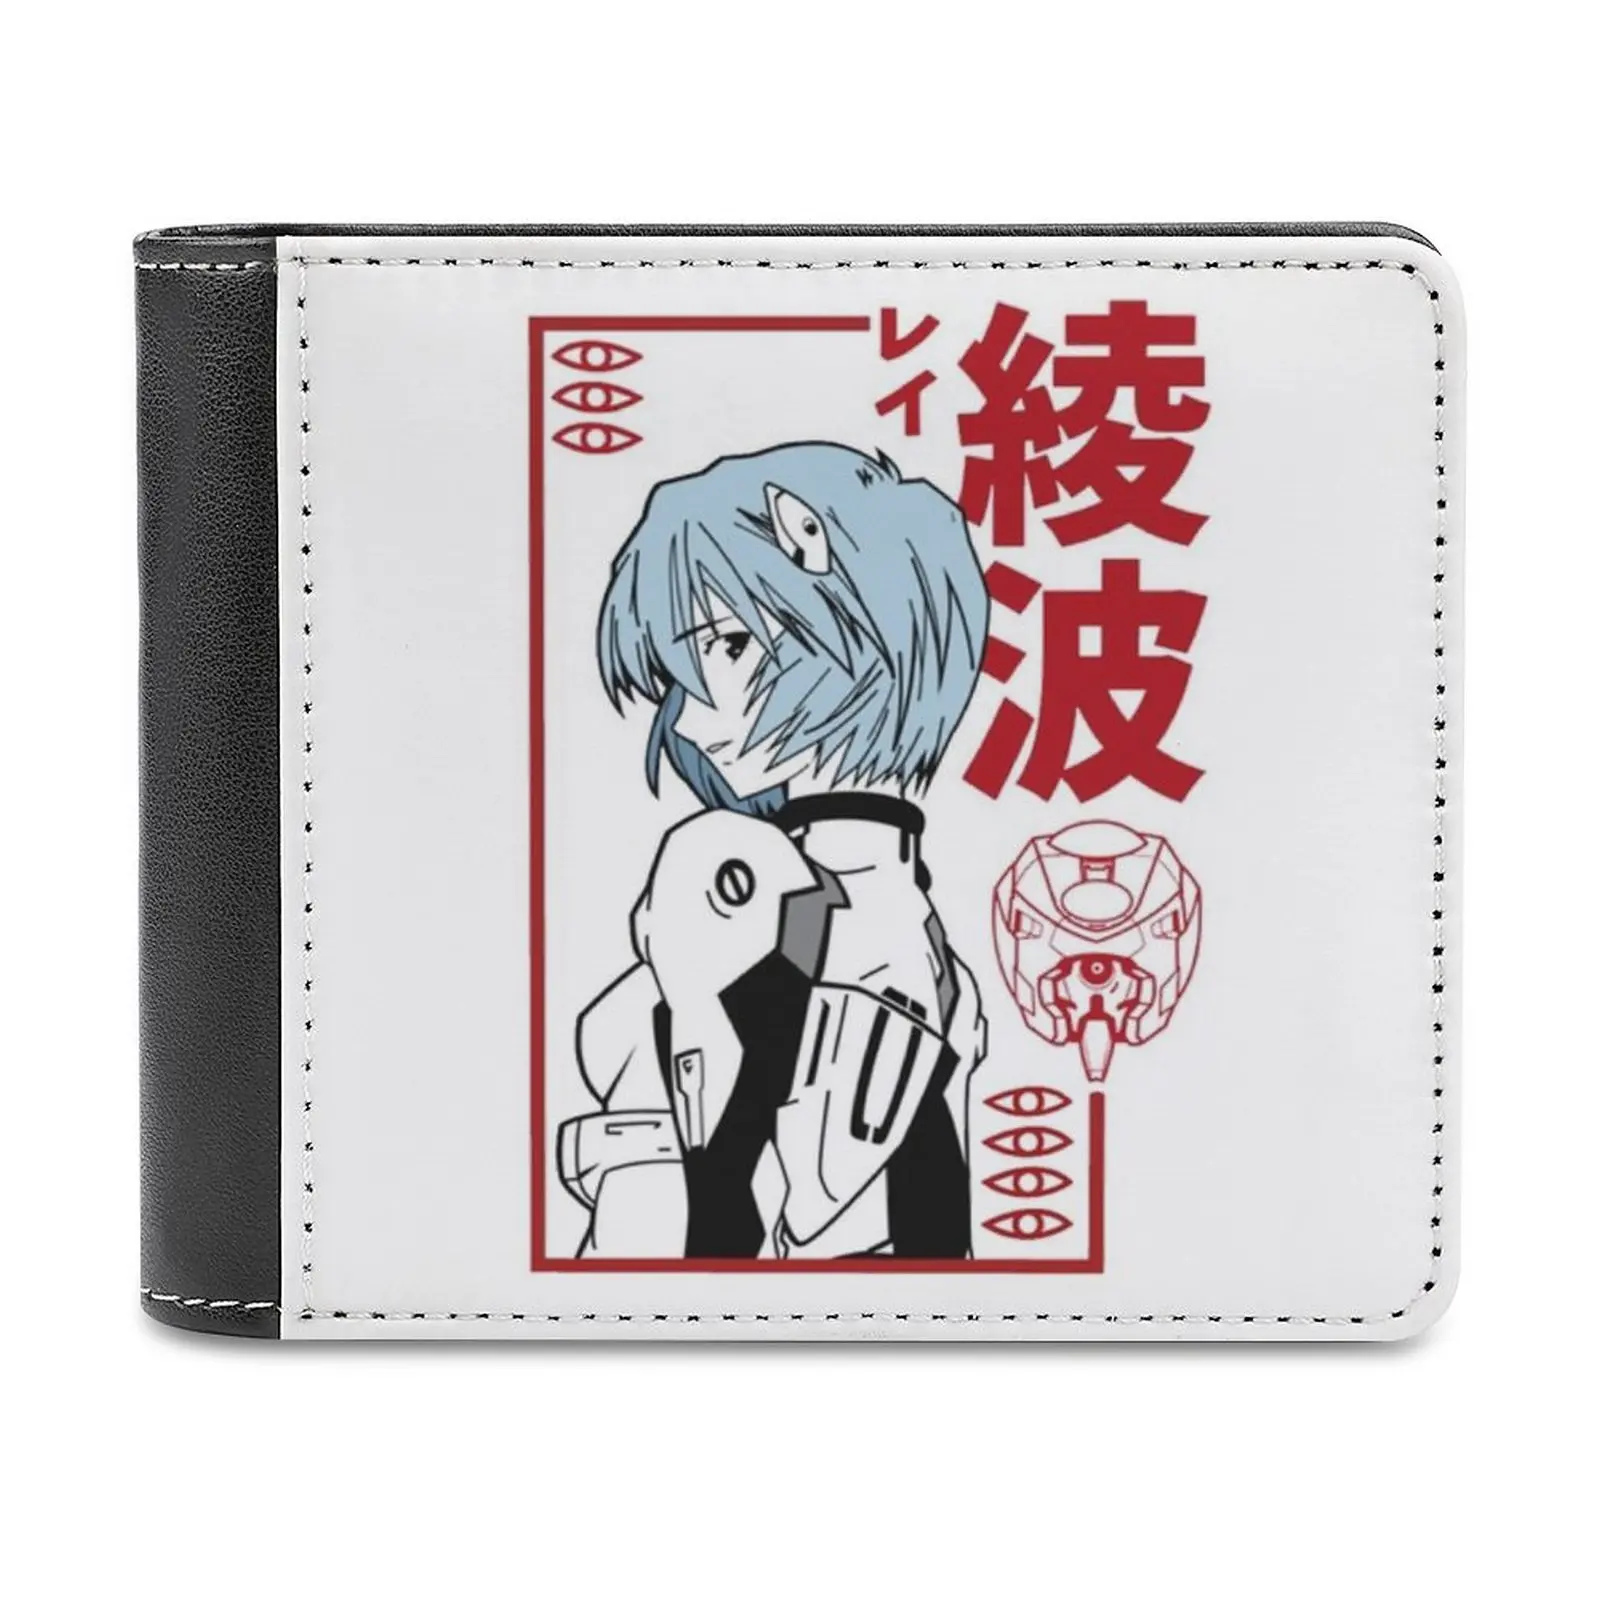 Мужской кожаный кошелек Ayanami, классический черный кошелек, держатель для кредитных карт, модный мужской кошелек с персонажем мультфильма Ayanami Роботом